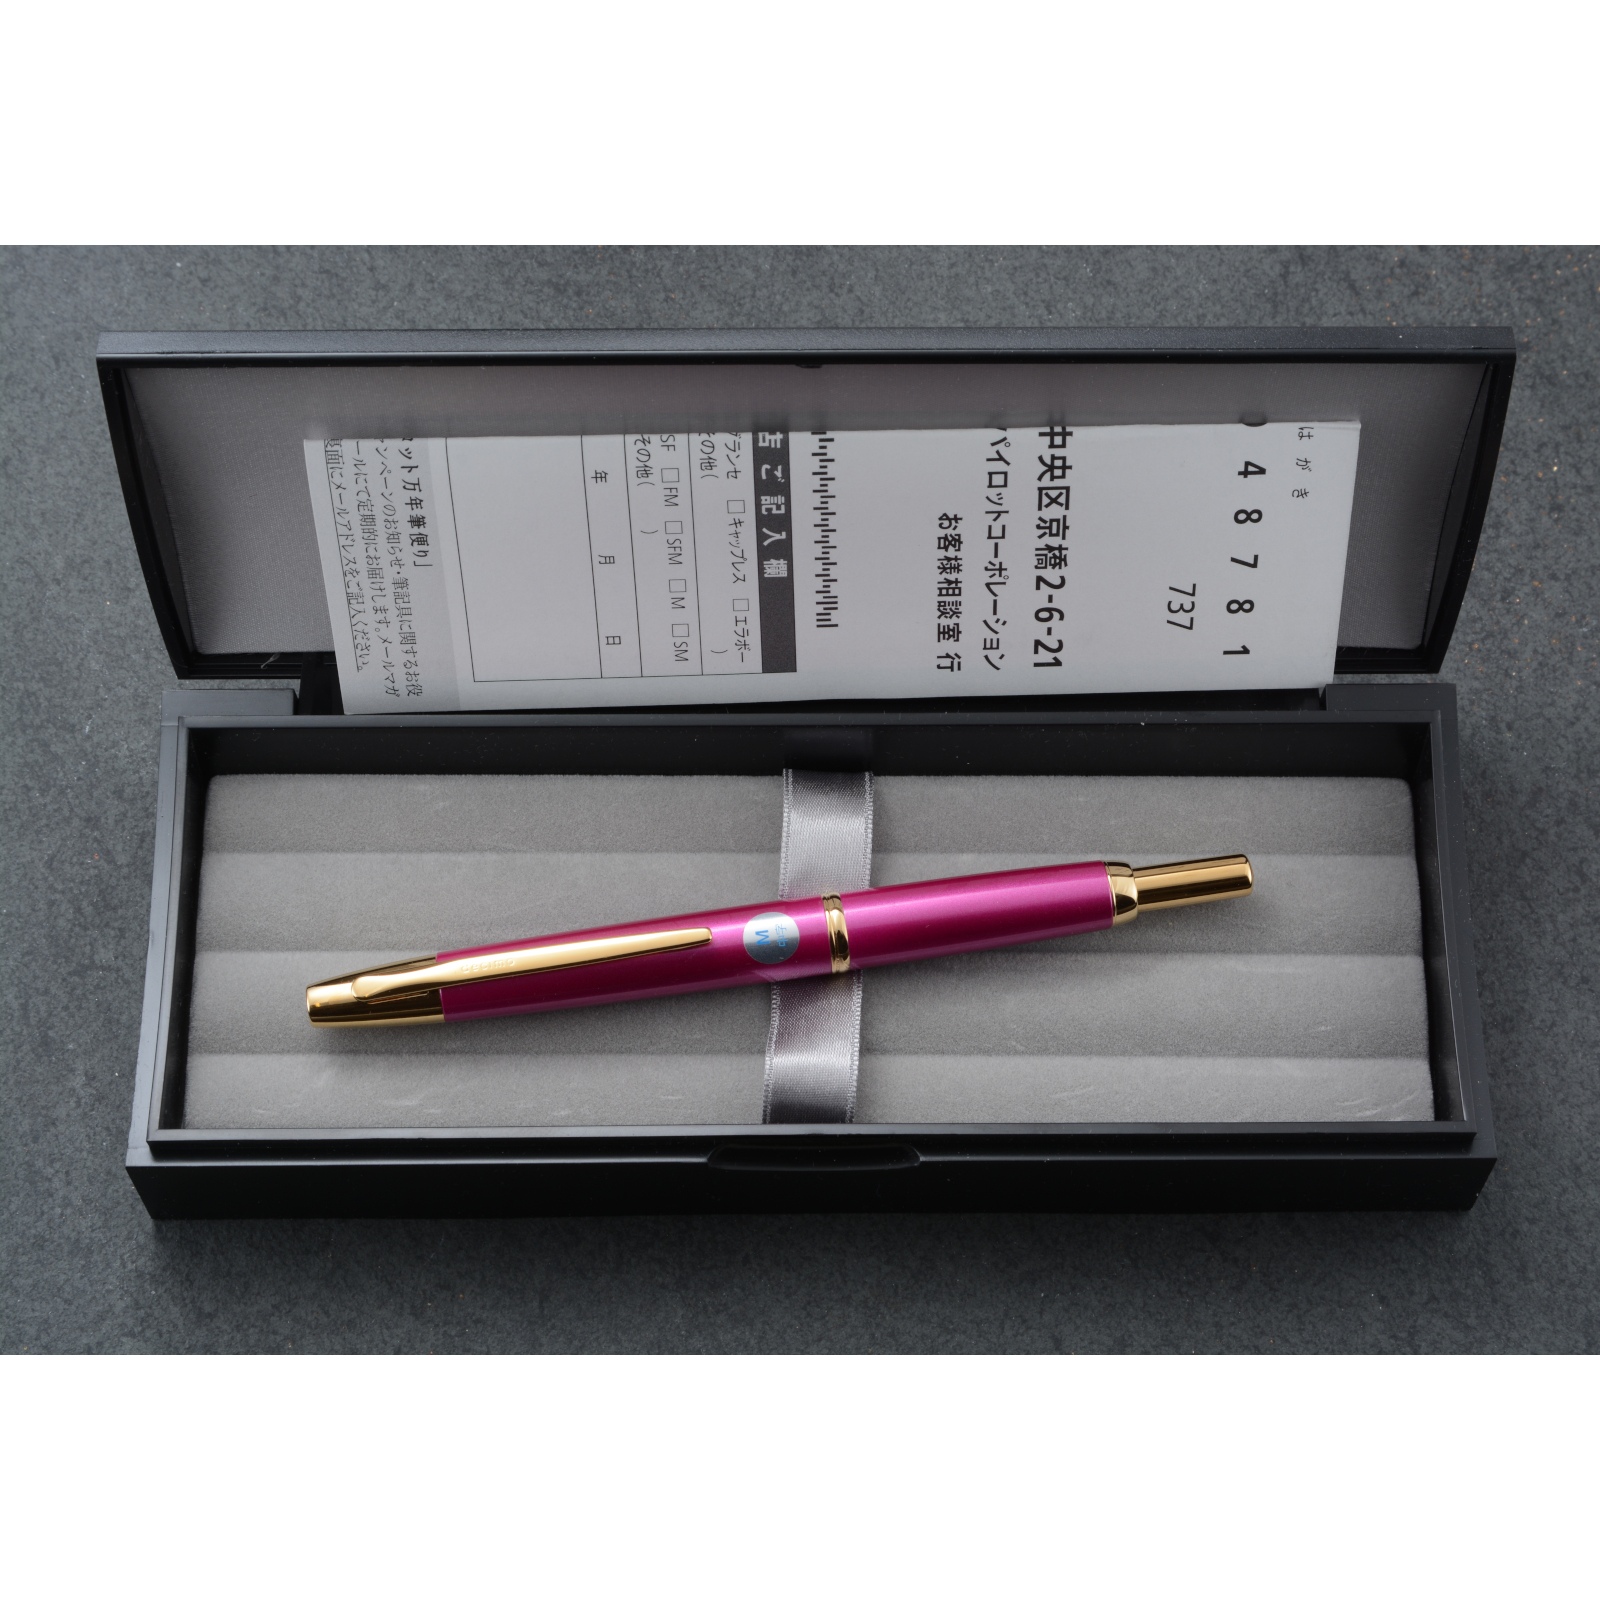 激安正規品 Pink PILOT Tourmaline CAPLESS Decimo Pen Metalic-Pink Fountain Vanishing  万年筆